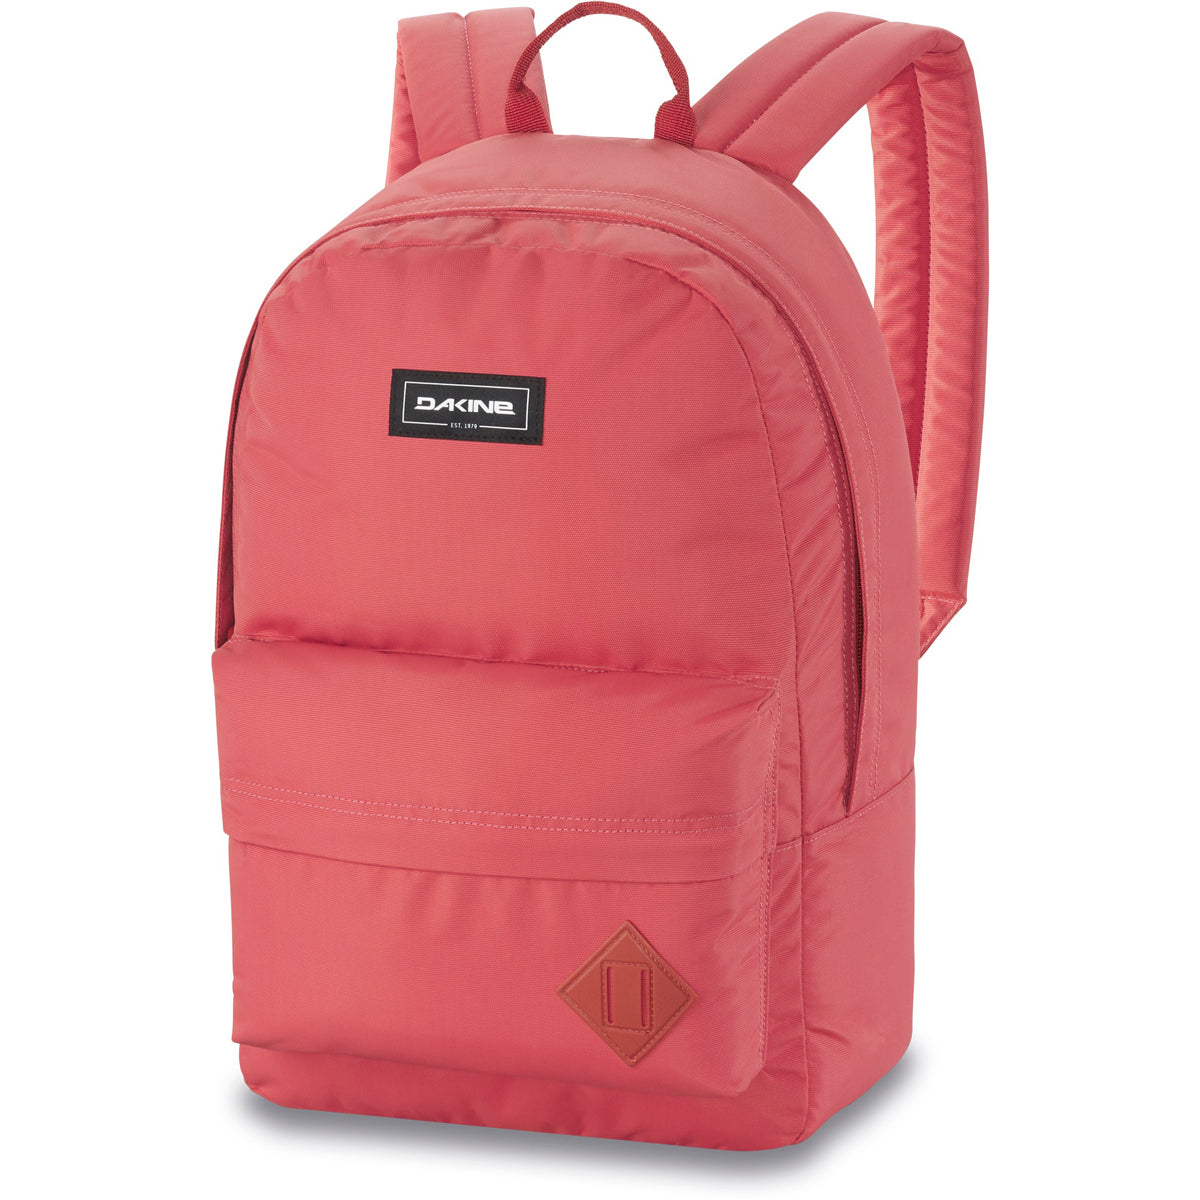 Dakine 365 Pack 21l Backpack - Mineral Red image 1